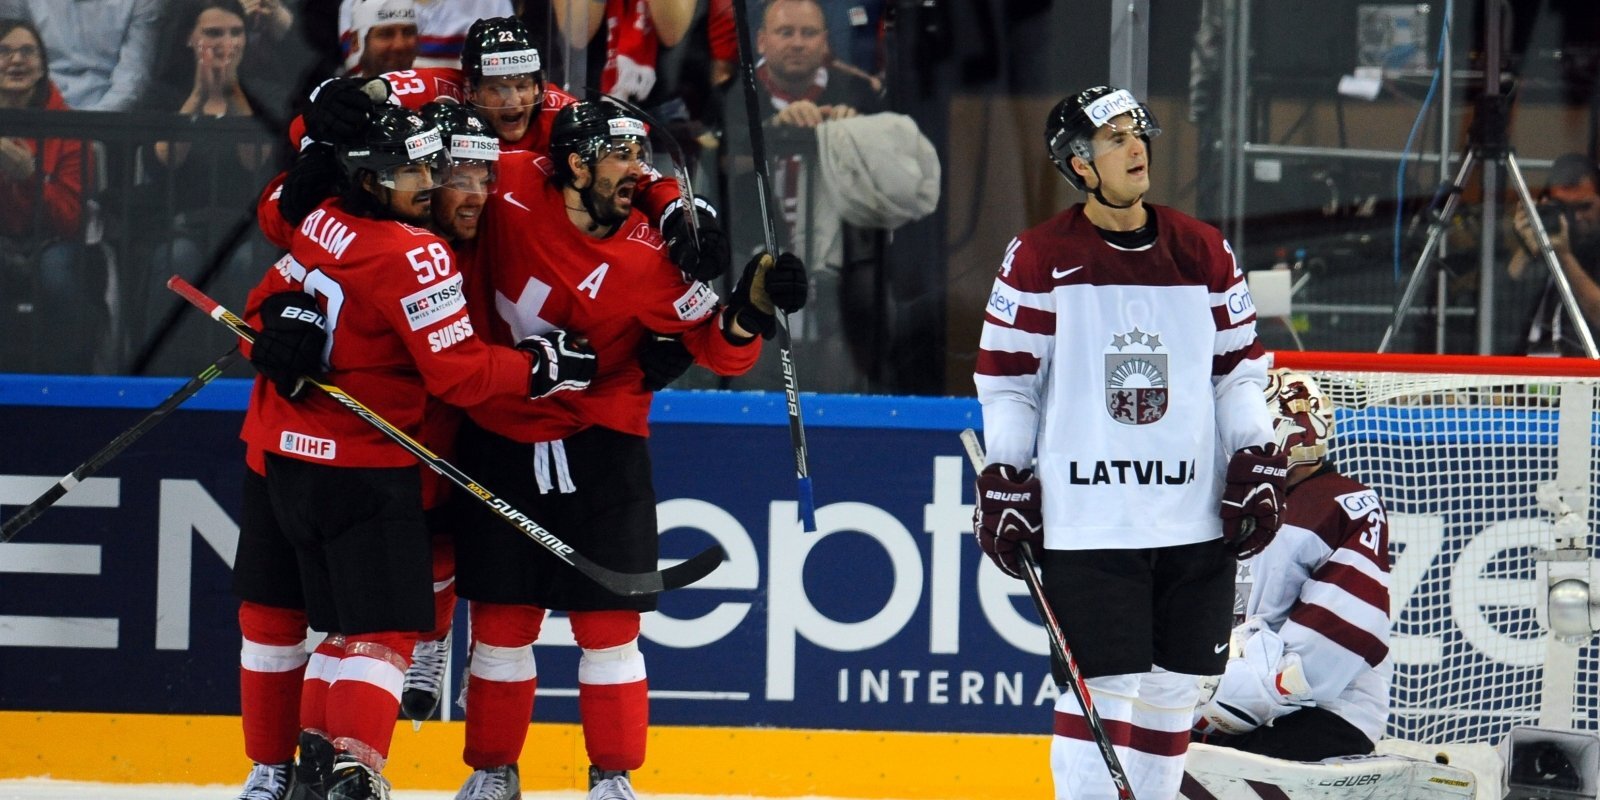 'Mīlasstāsts' jau kopš B grupas laikiem... Kad Latvija un Šveice satiekas hokeja laukumā